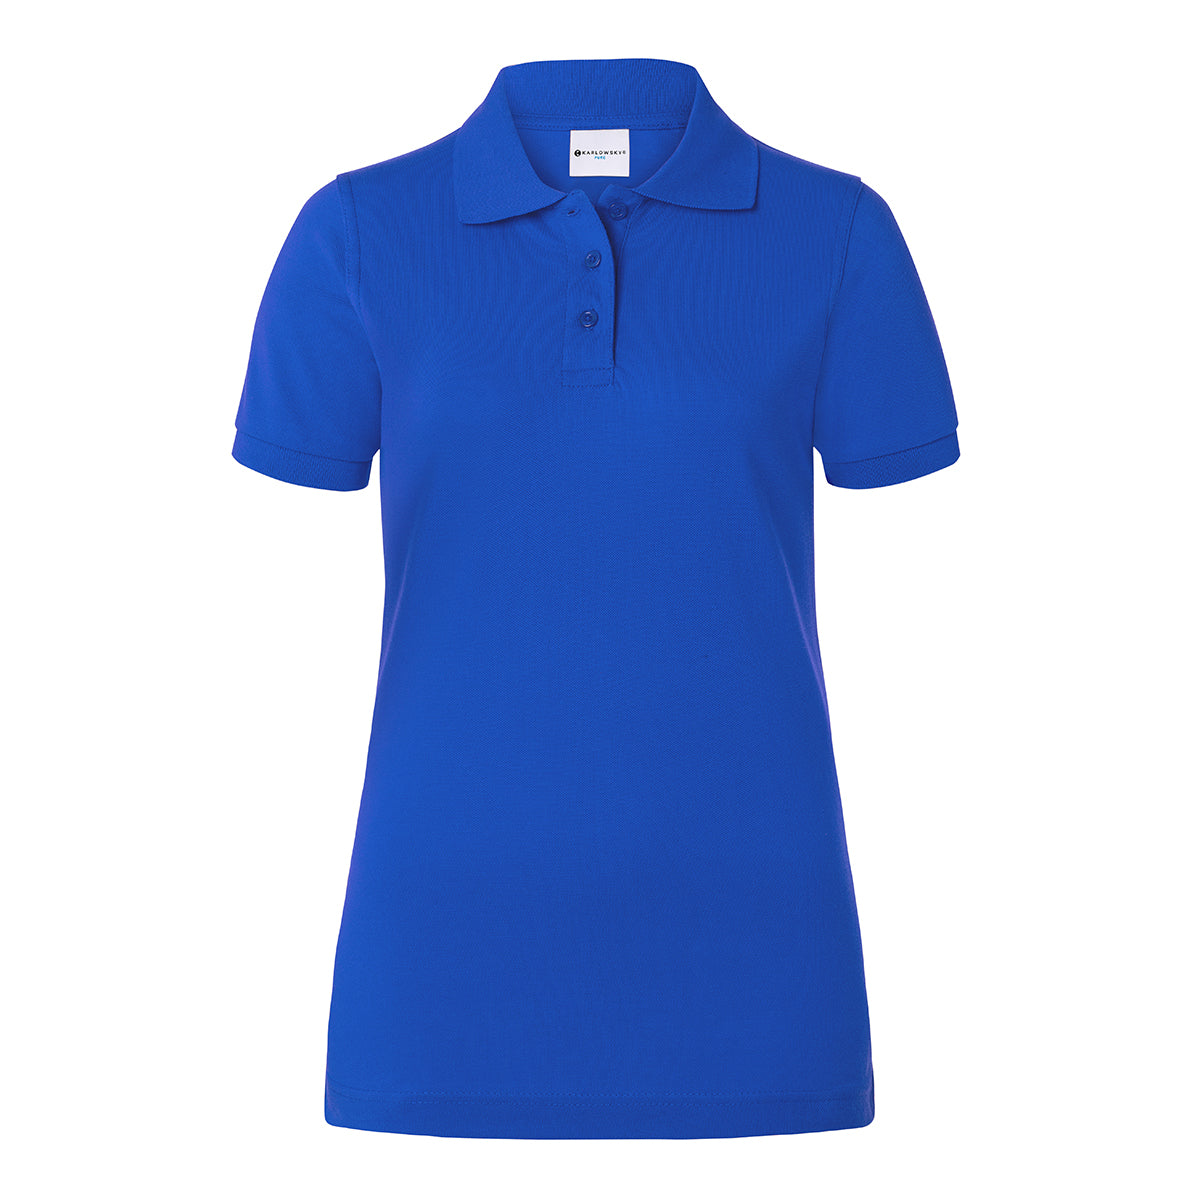 Karlowsky - Arbejdsbeklædning Basic Poloshirt til damer - Blå - Størrelse: M